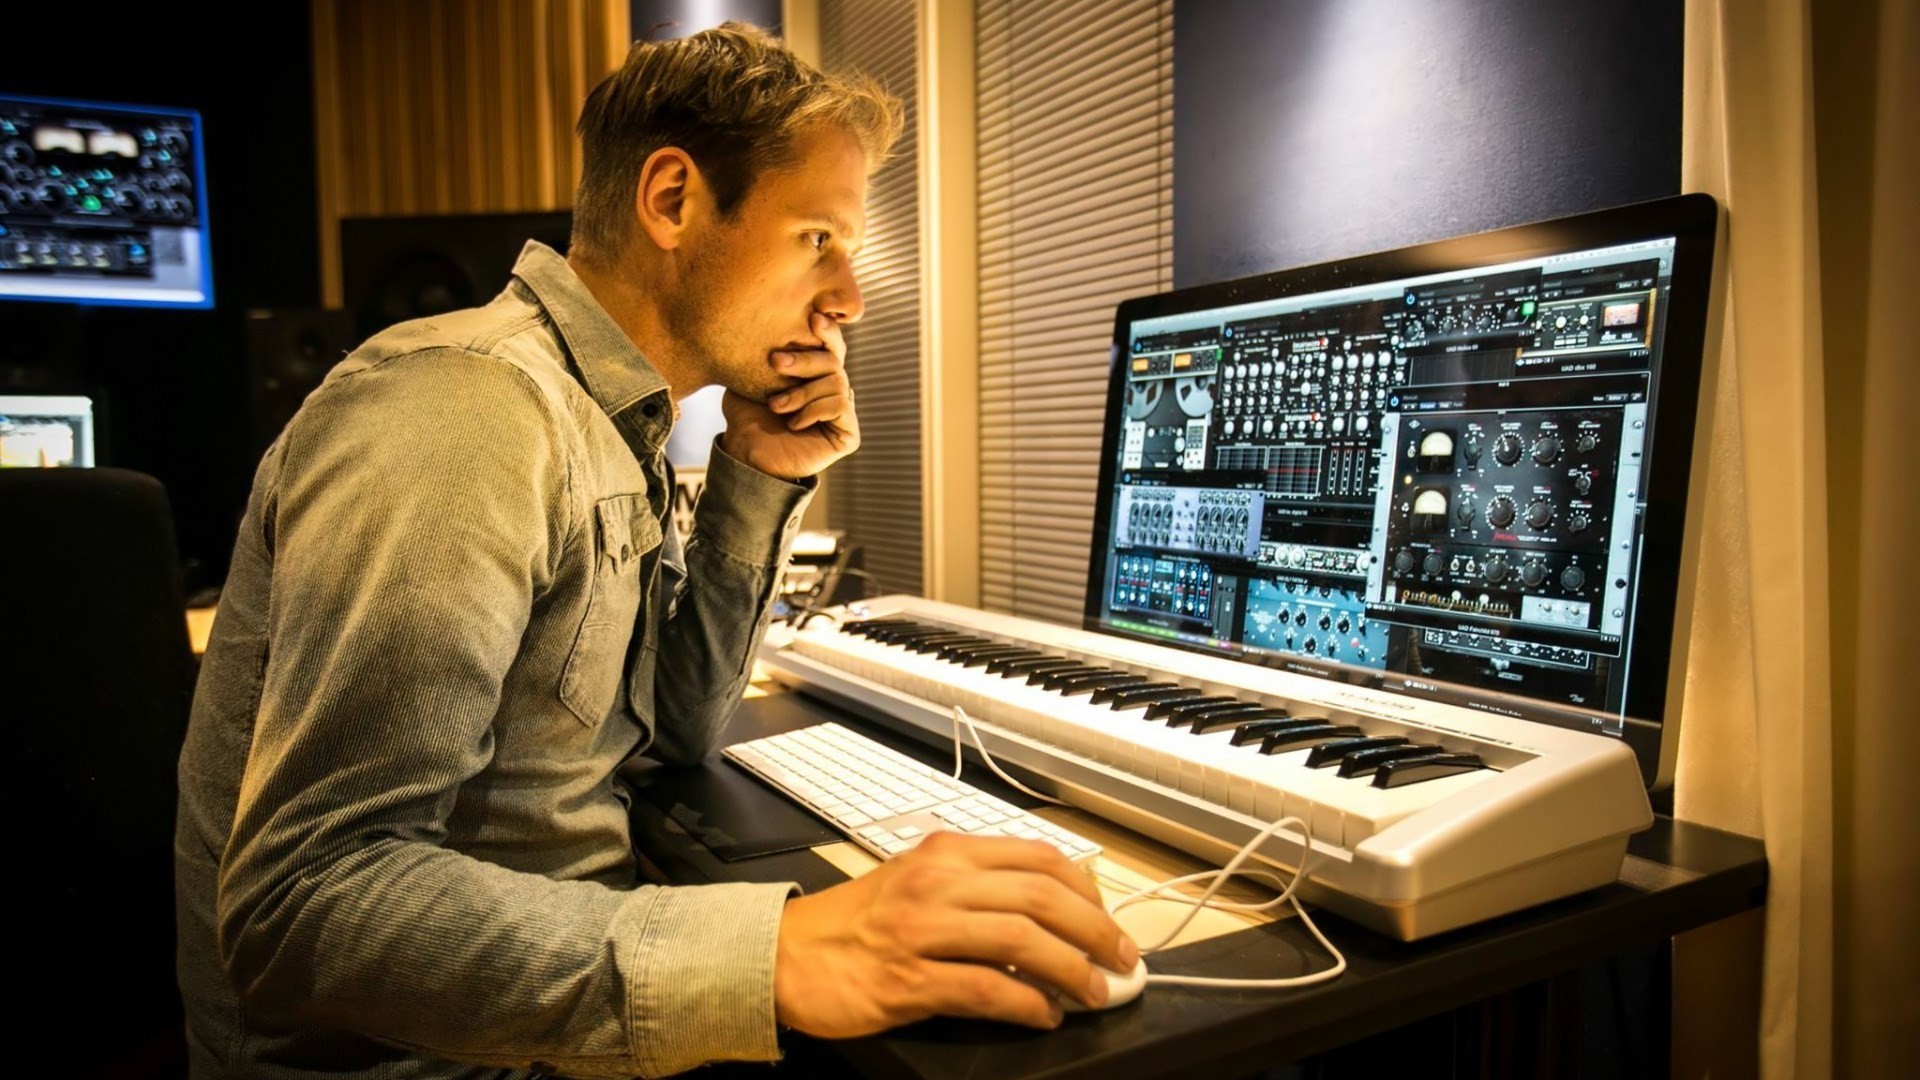 Music заработок. Armin van Buuren в студии. Армин музыкант. Студия композитора. Человек в студии.